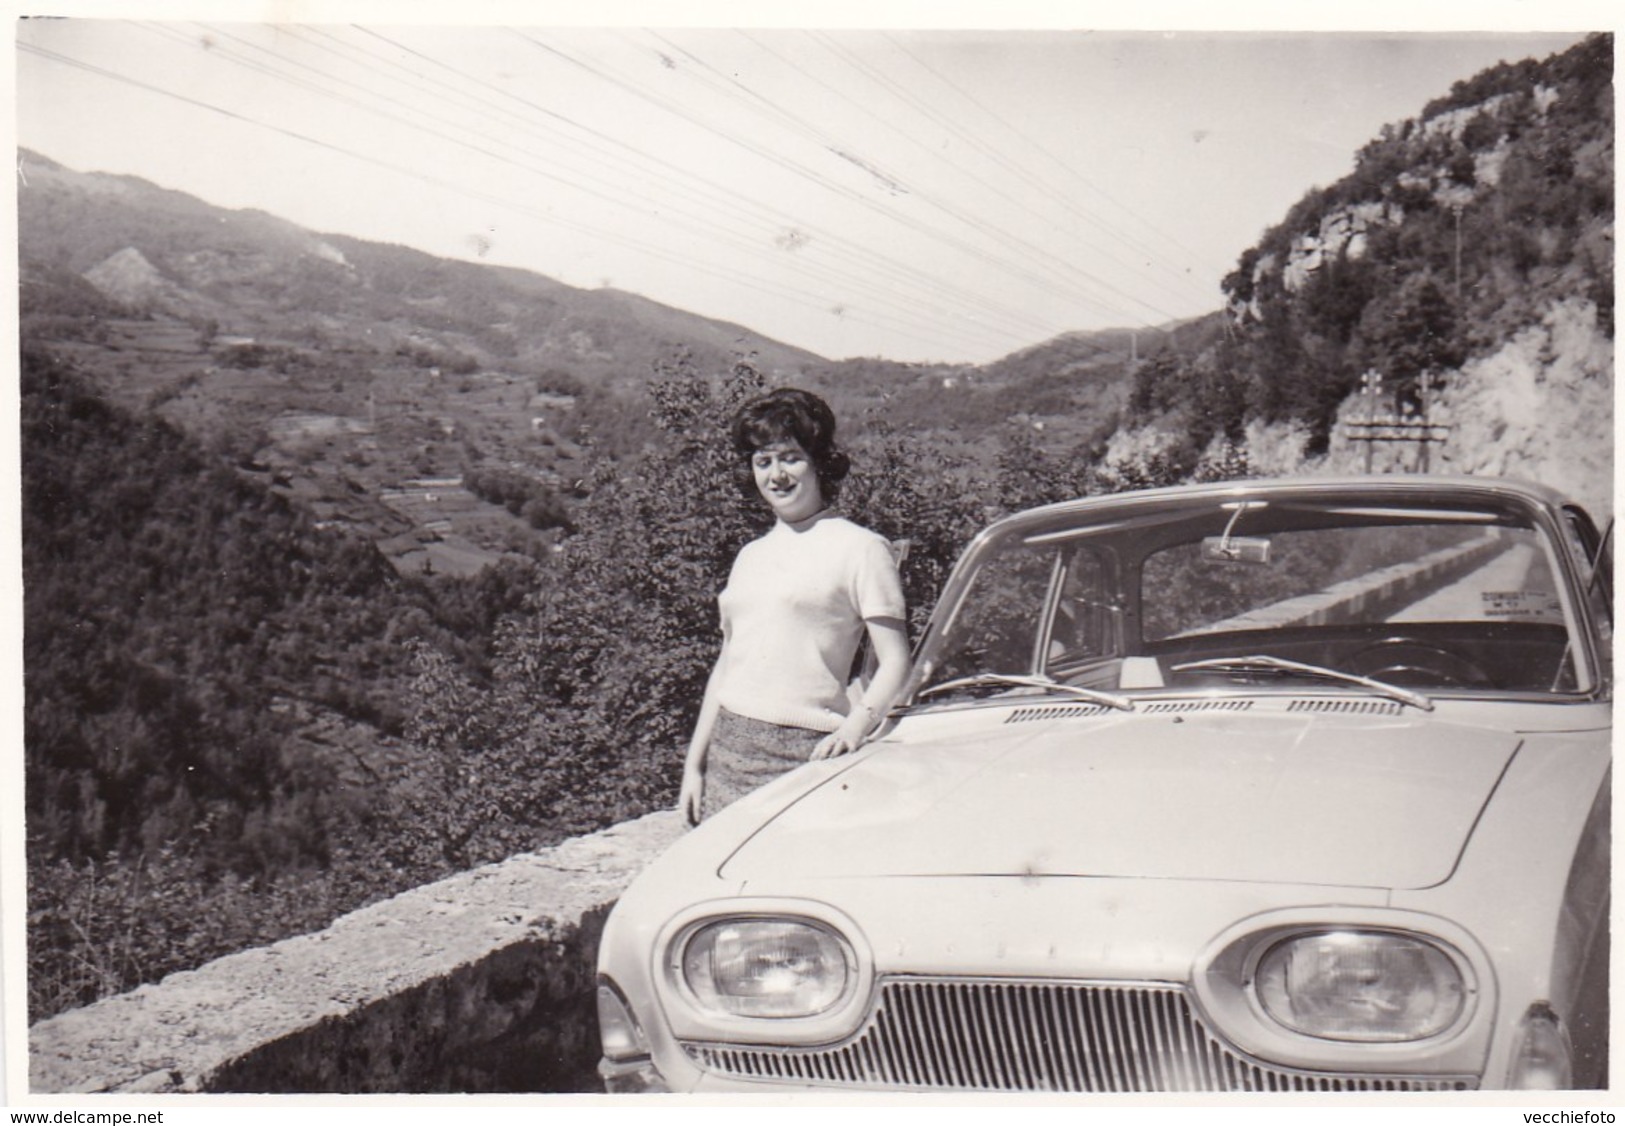 FORD TAUNUS - FOTOGRAFIA DEGLI ANNI '60 - Automobili